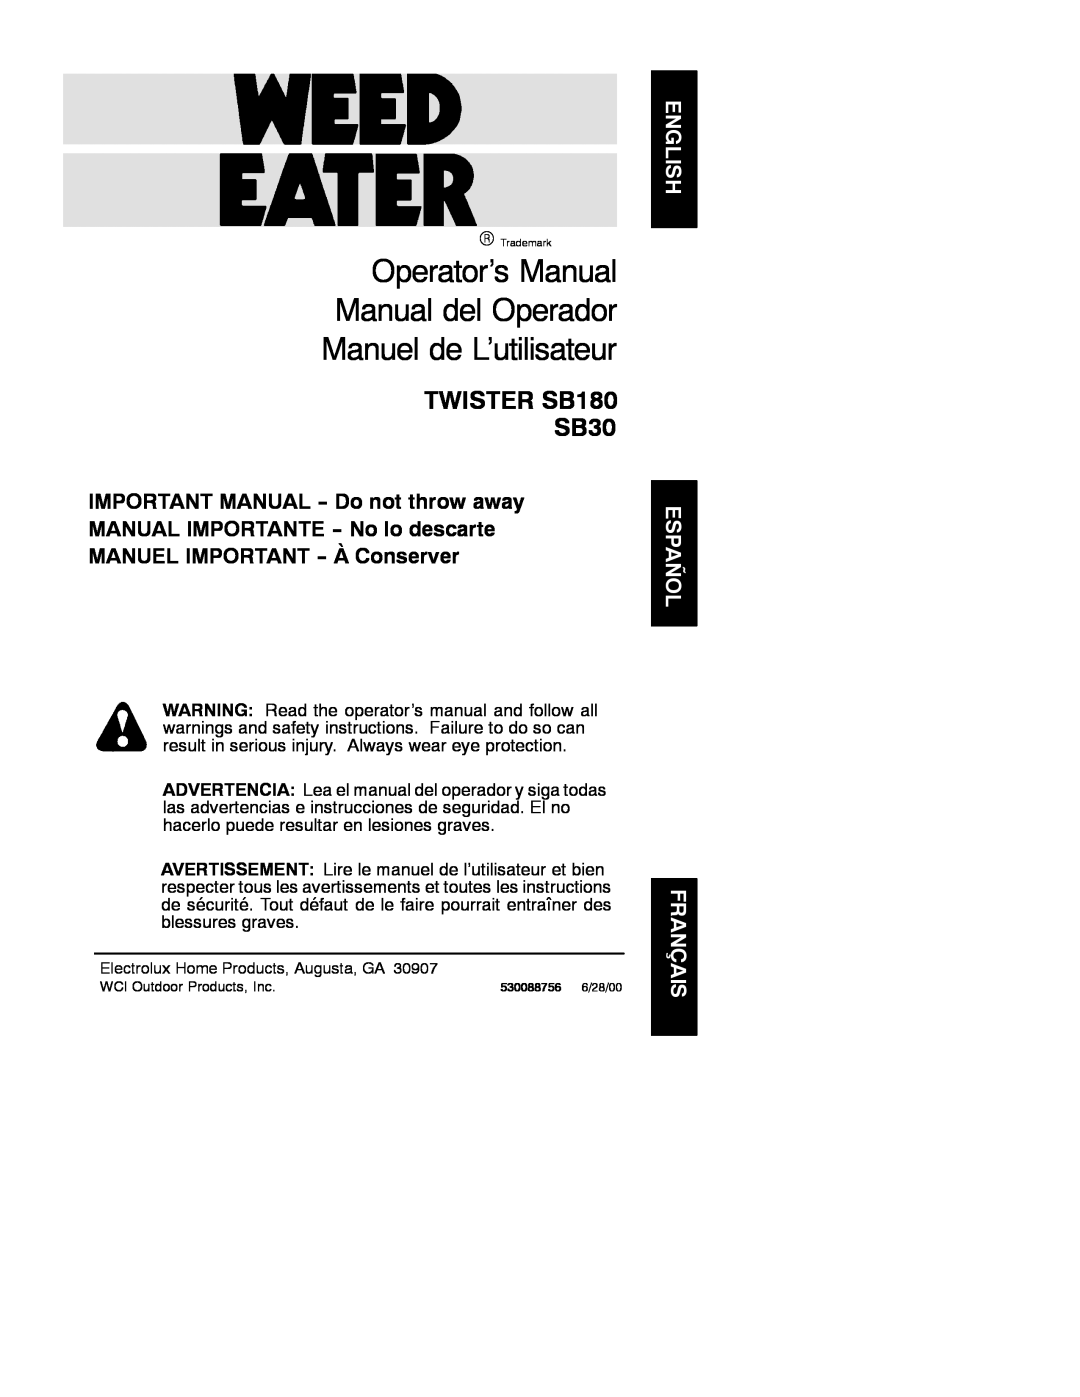 Weed Eater 530088756 manual Operator’s Manual Manual del Operador, Manuel de L’utilisateur, TWISTER SB180 SB30 